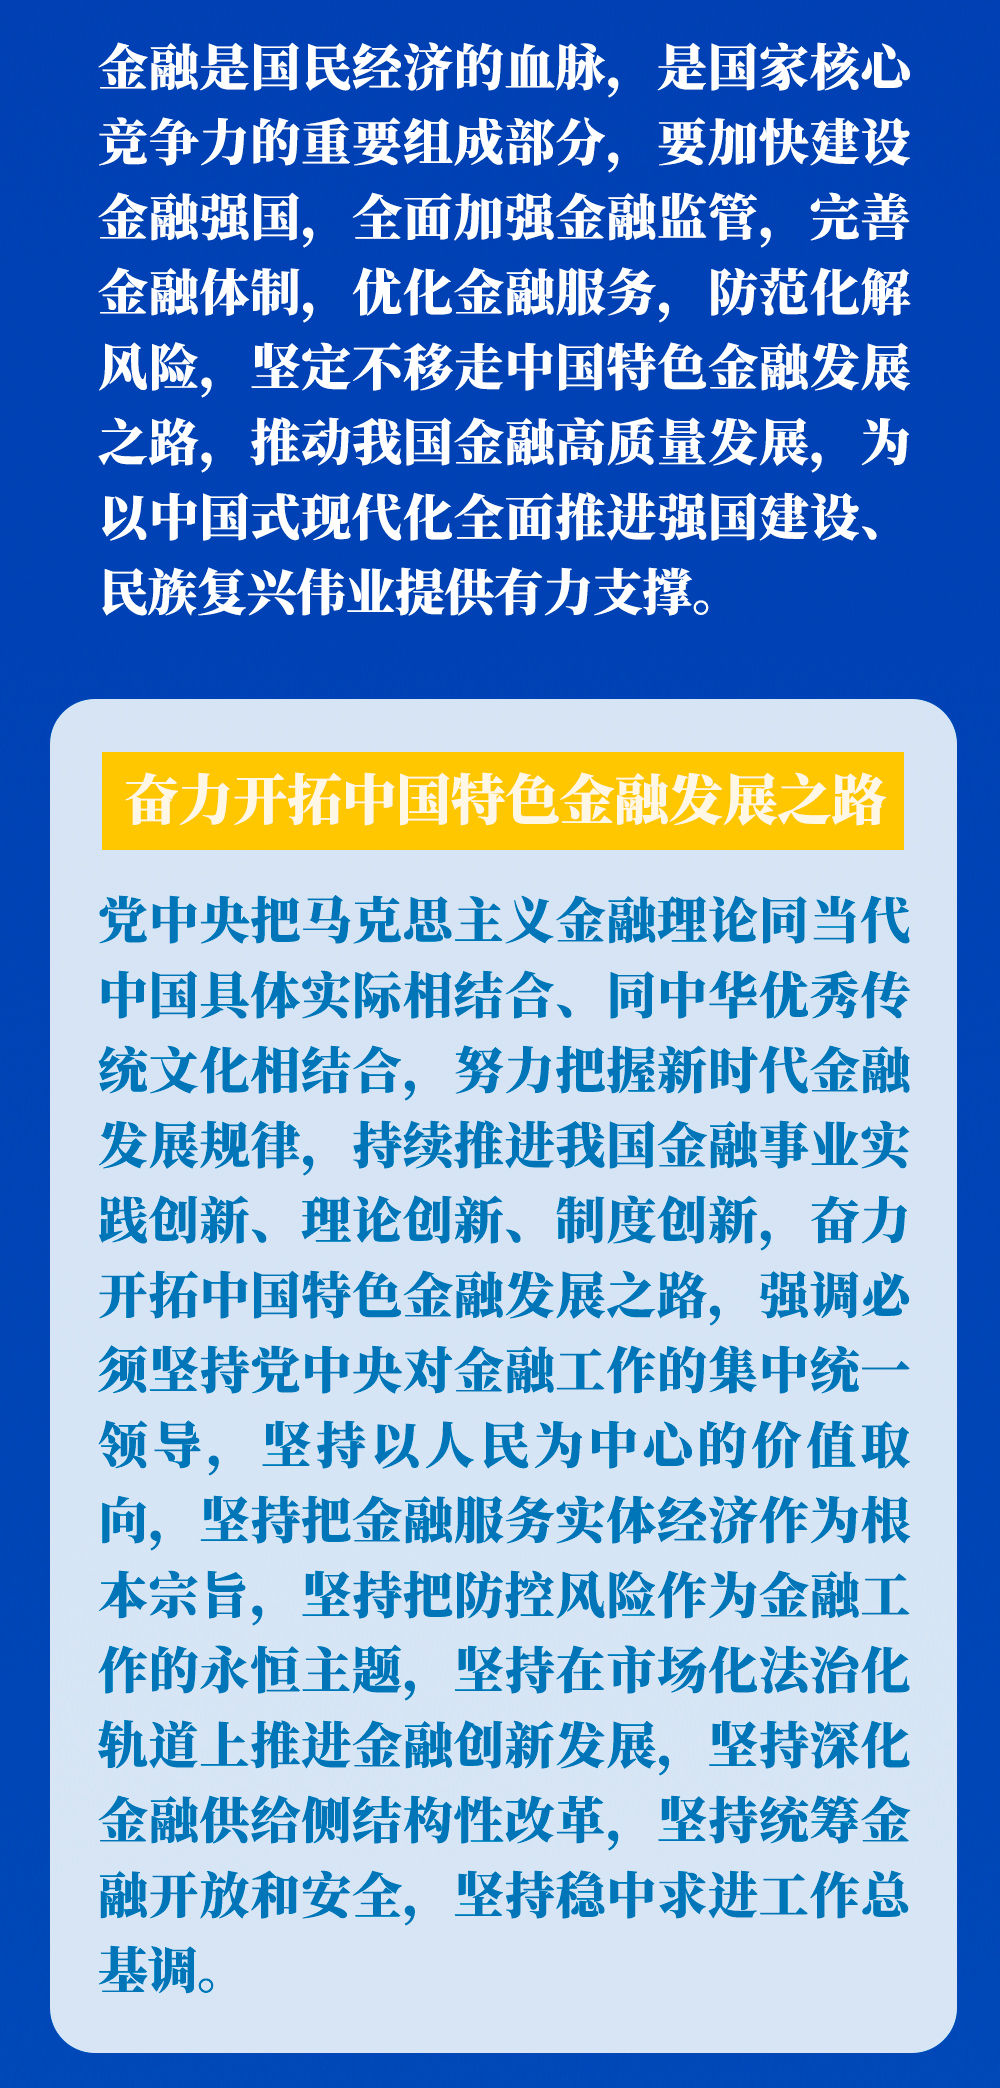 重庆警圆侦破特除夜散资棍骗案 涉案金额3亿余元